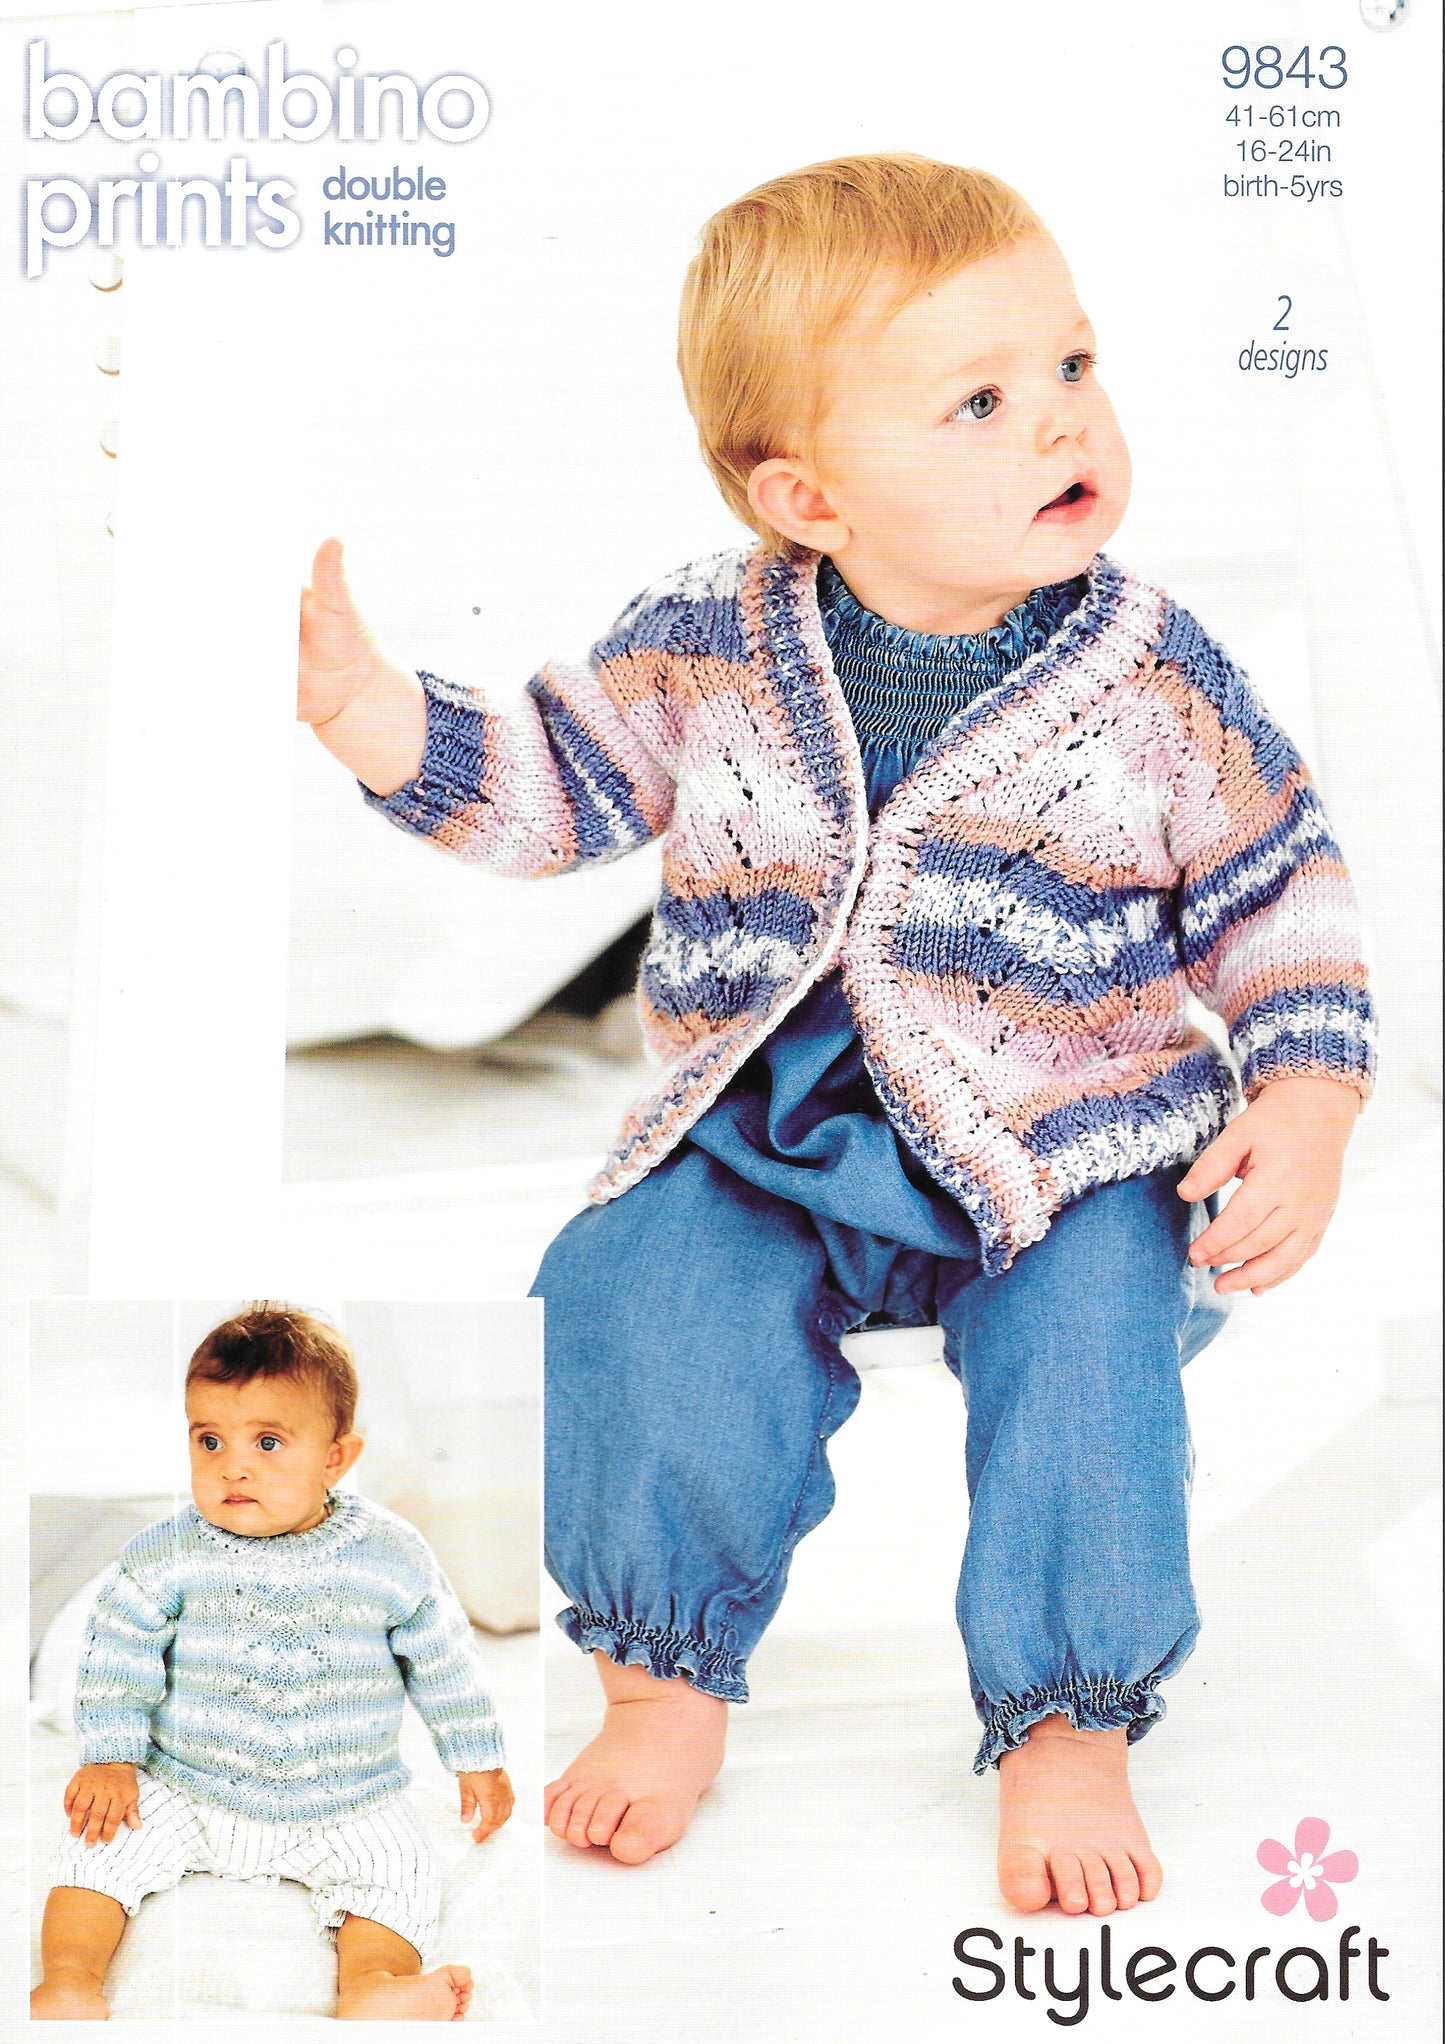 9843 Stylecraft knitting pattern. Child's Cardigan/Sweater. Double Knitting